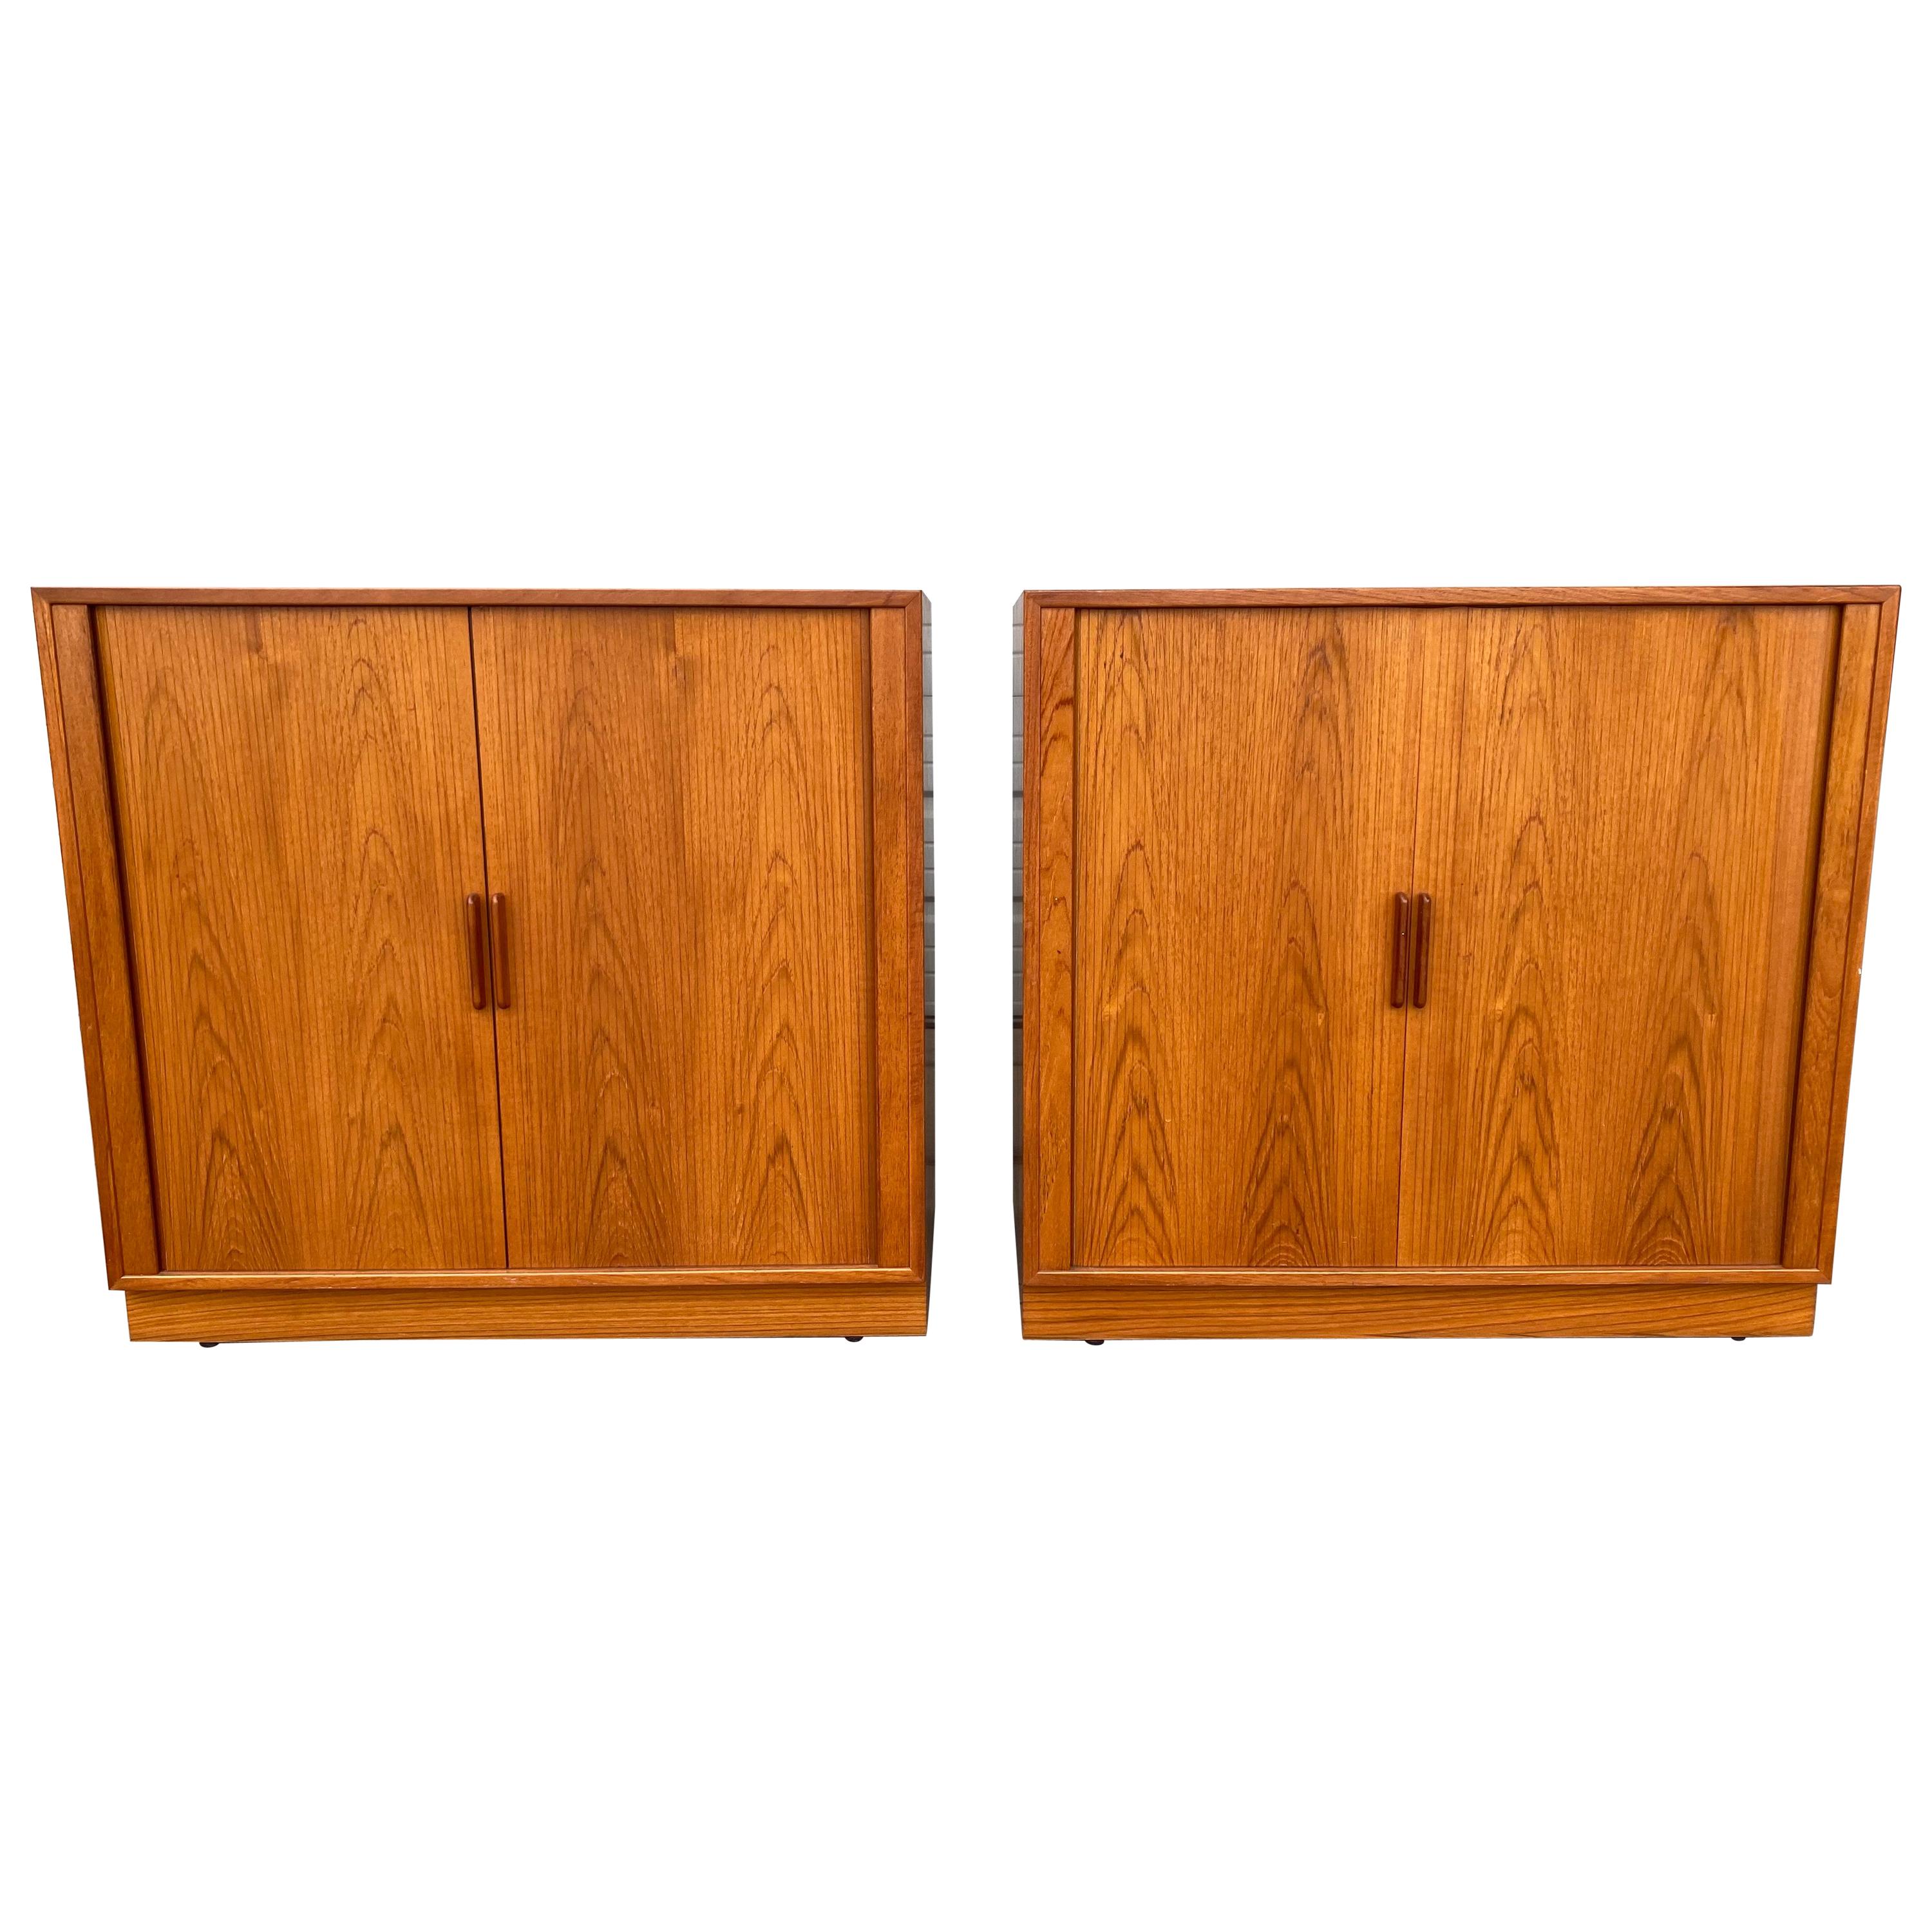 Matched Pair Teak Tambour Door Cabinets / Servers Made in Denmark